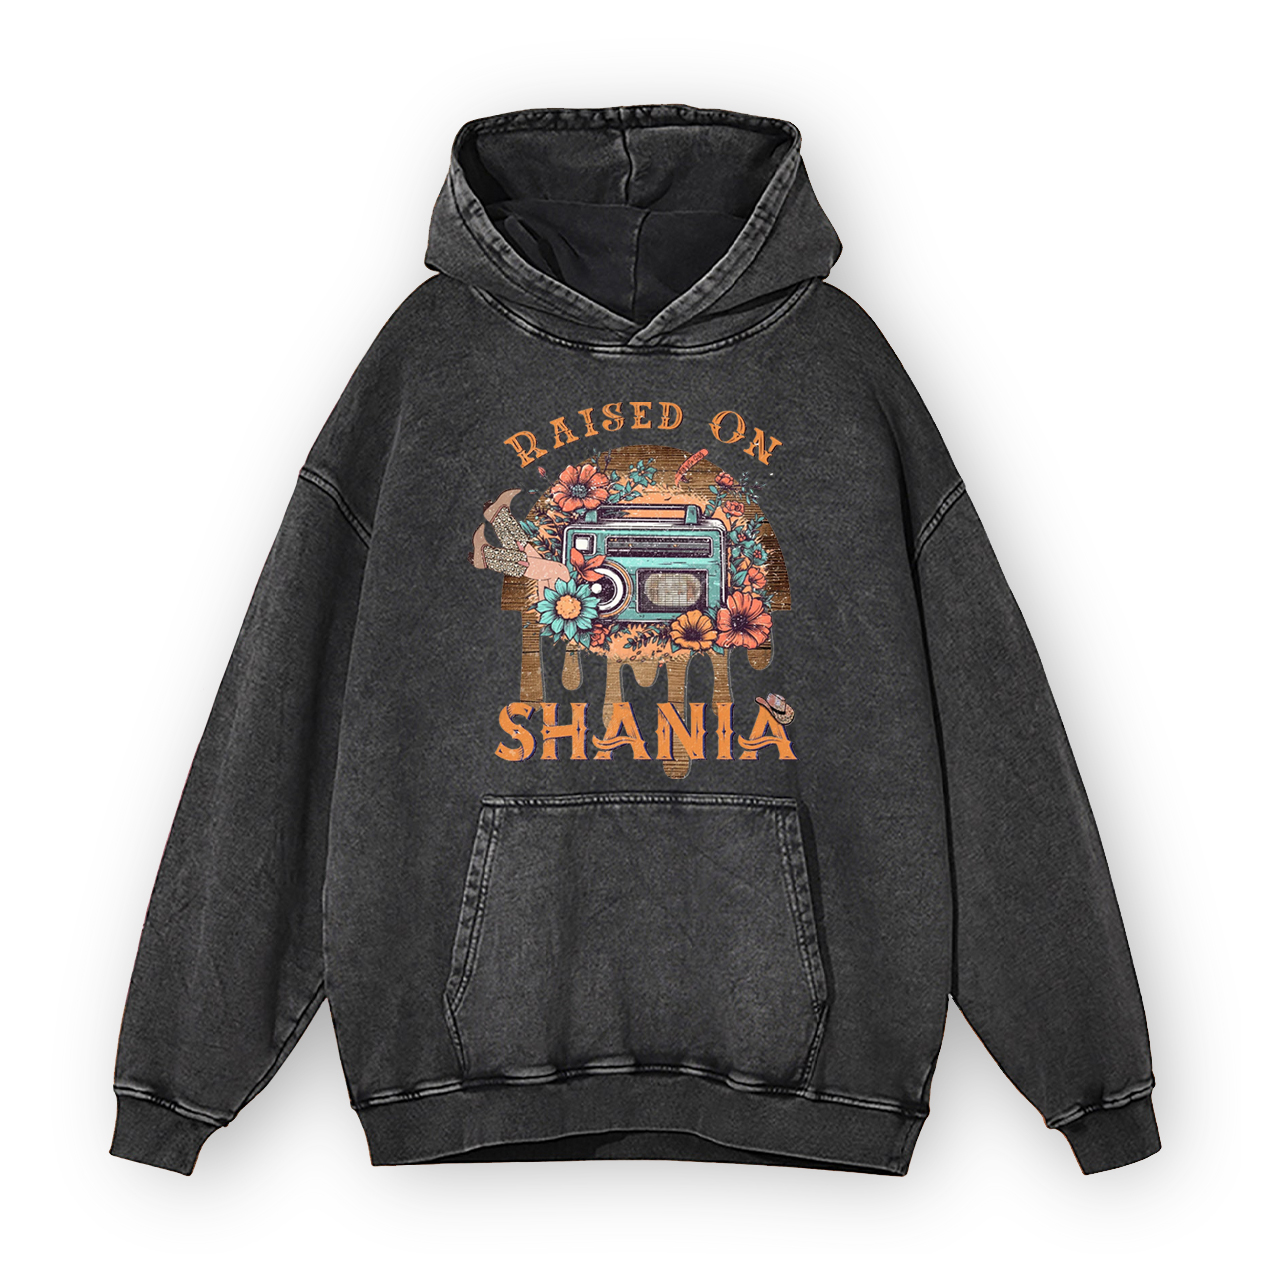 Raised On Shania Garment-Dye Hoodies